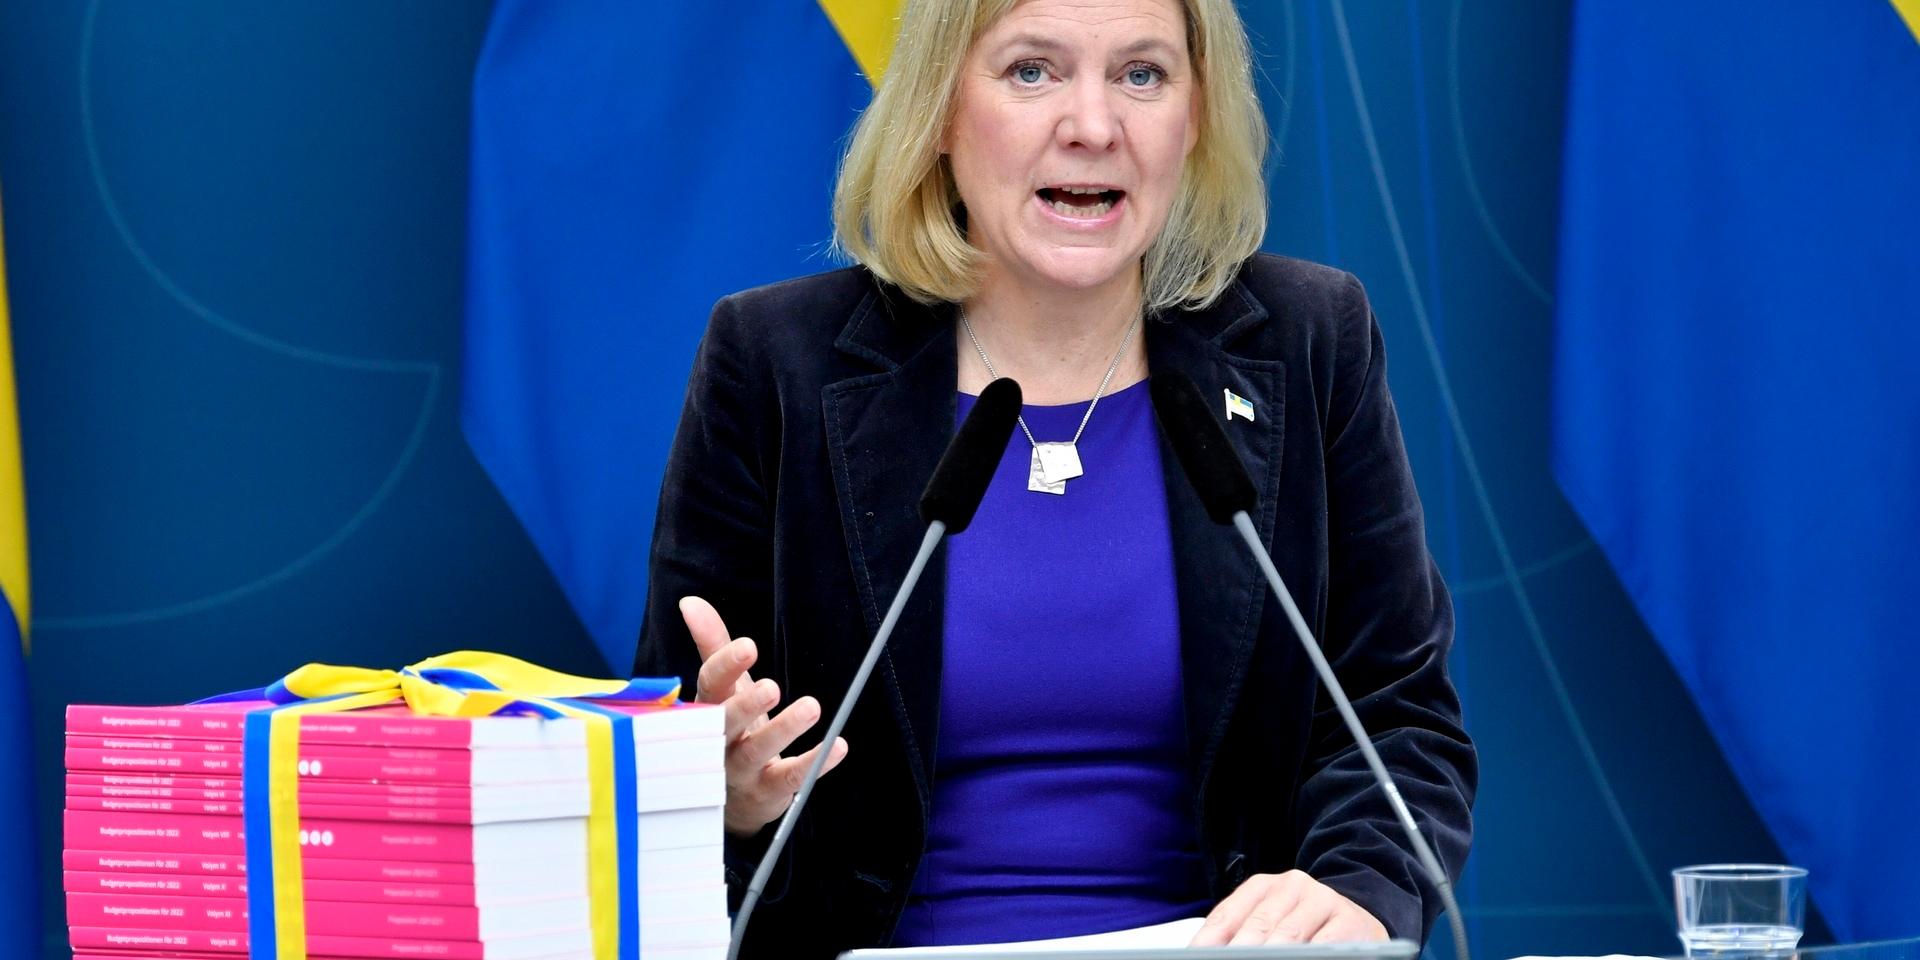 Finansminister Magdalena Andersson (S) presenterar budgetpropositionen för 2022 vid en pressträff i Rosenbad. I november kan hon bli ny partiledare för Socialdemokraterna. Arkivbild.